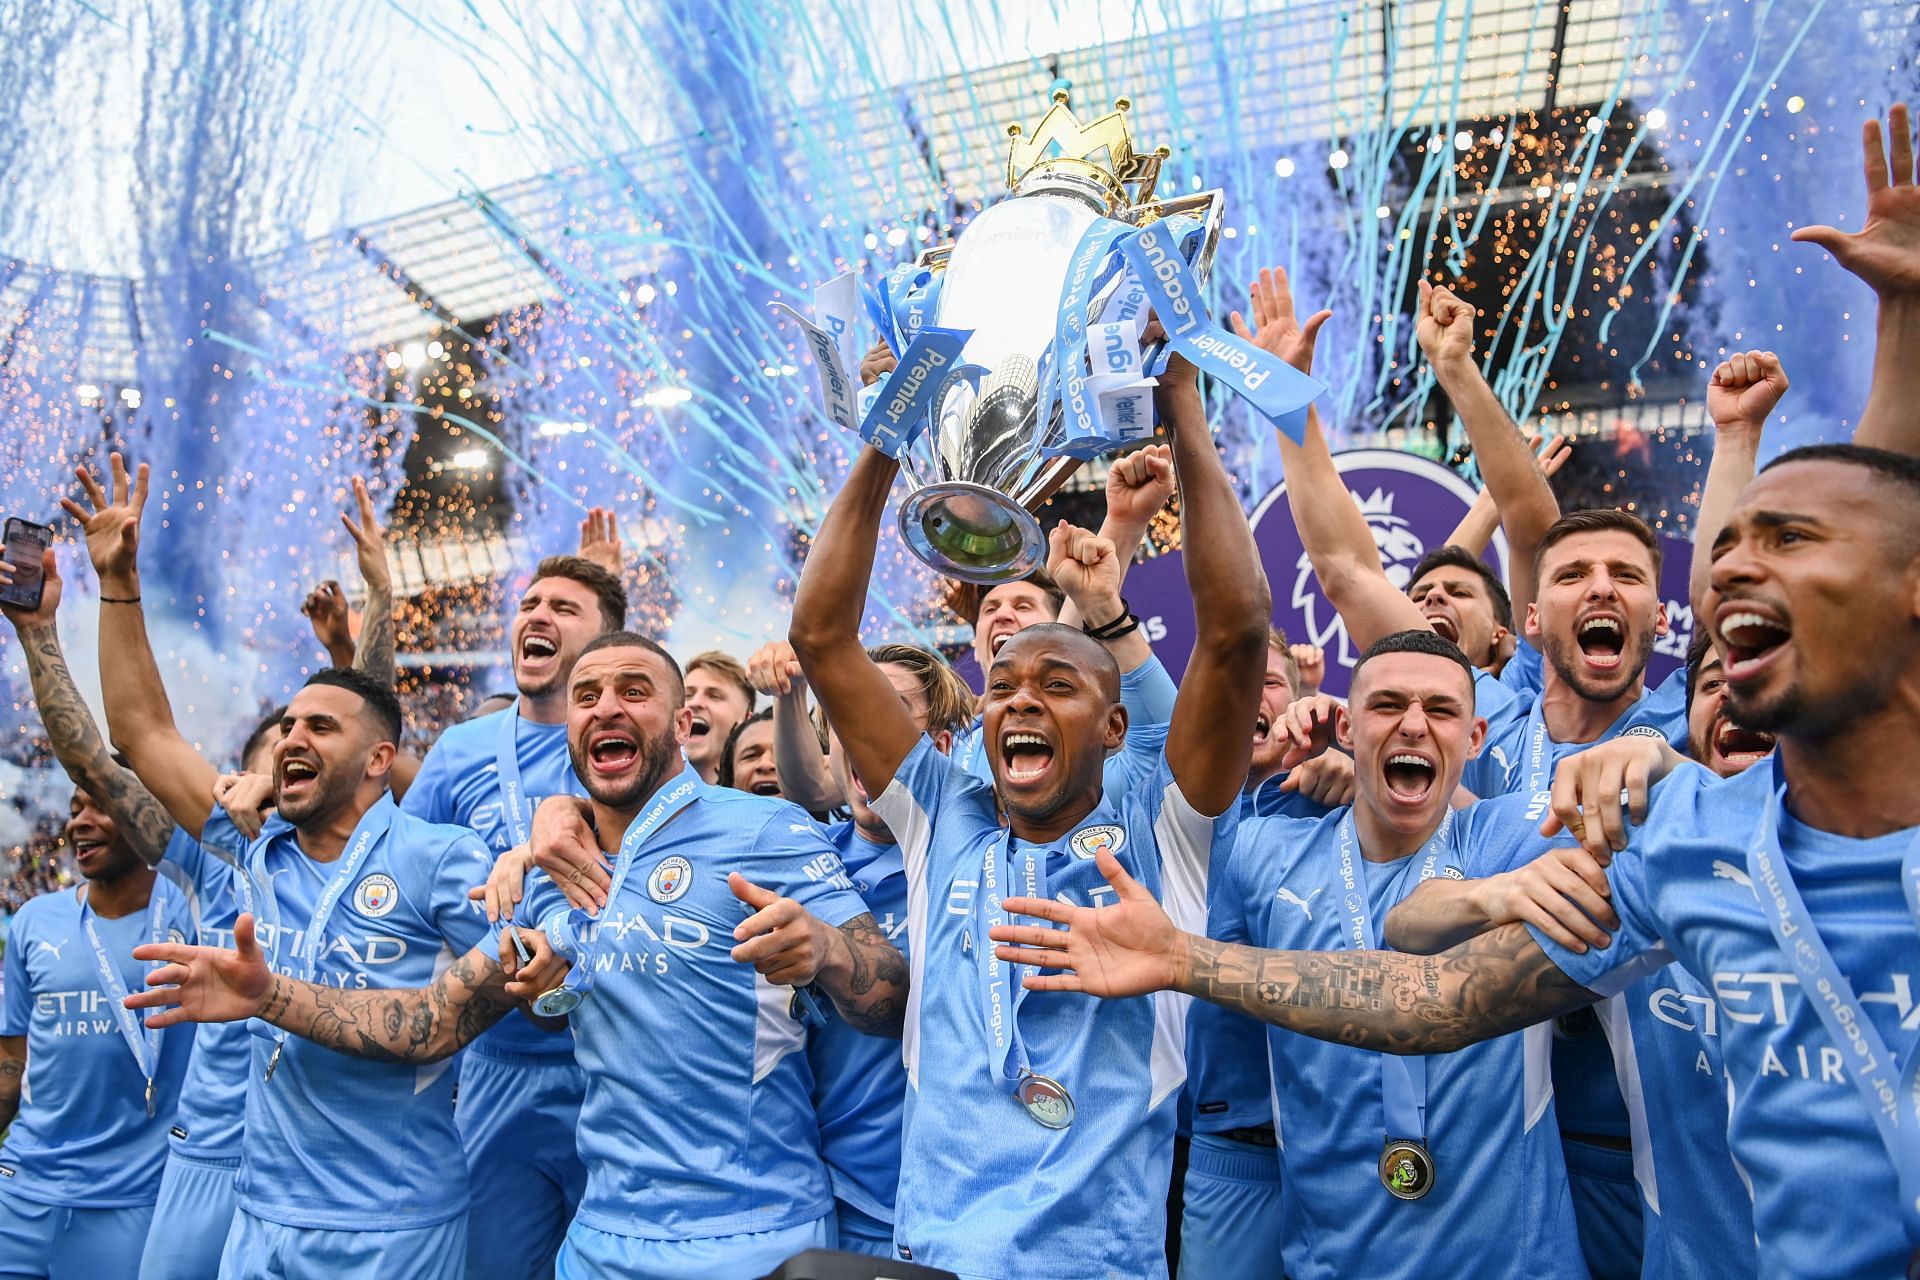 Manchester City have now won six Premier League titles